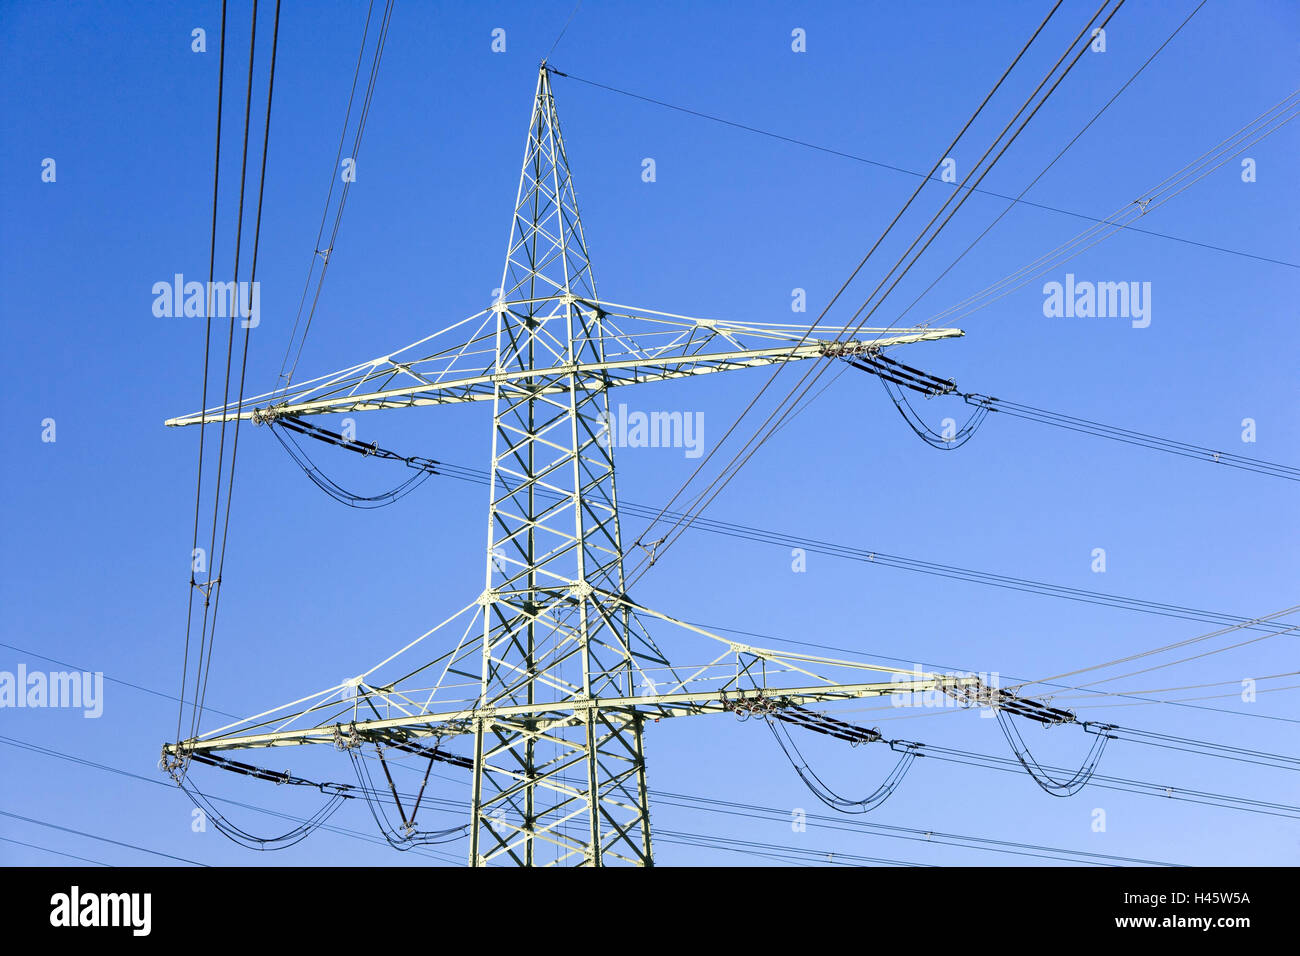 Hochspannungs-Pole, Detail, Mast, Strommasten, Schaltungen, Strom, Strom, Energie, Stromversorgung, Stromnetz, Datenverbindung, Netzwerk, Stromleitungen, Hochspannungs-Schaltung, Spannung, Hochspannung, Überlandleitung, Himmel, blau, Stockfoto